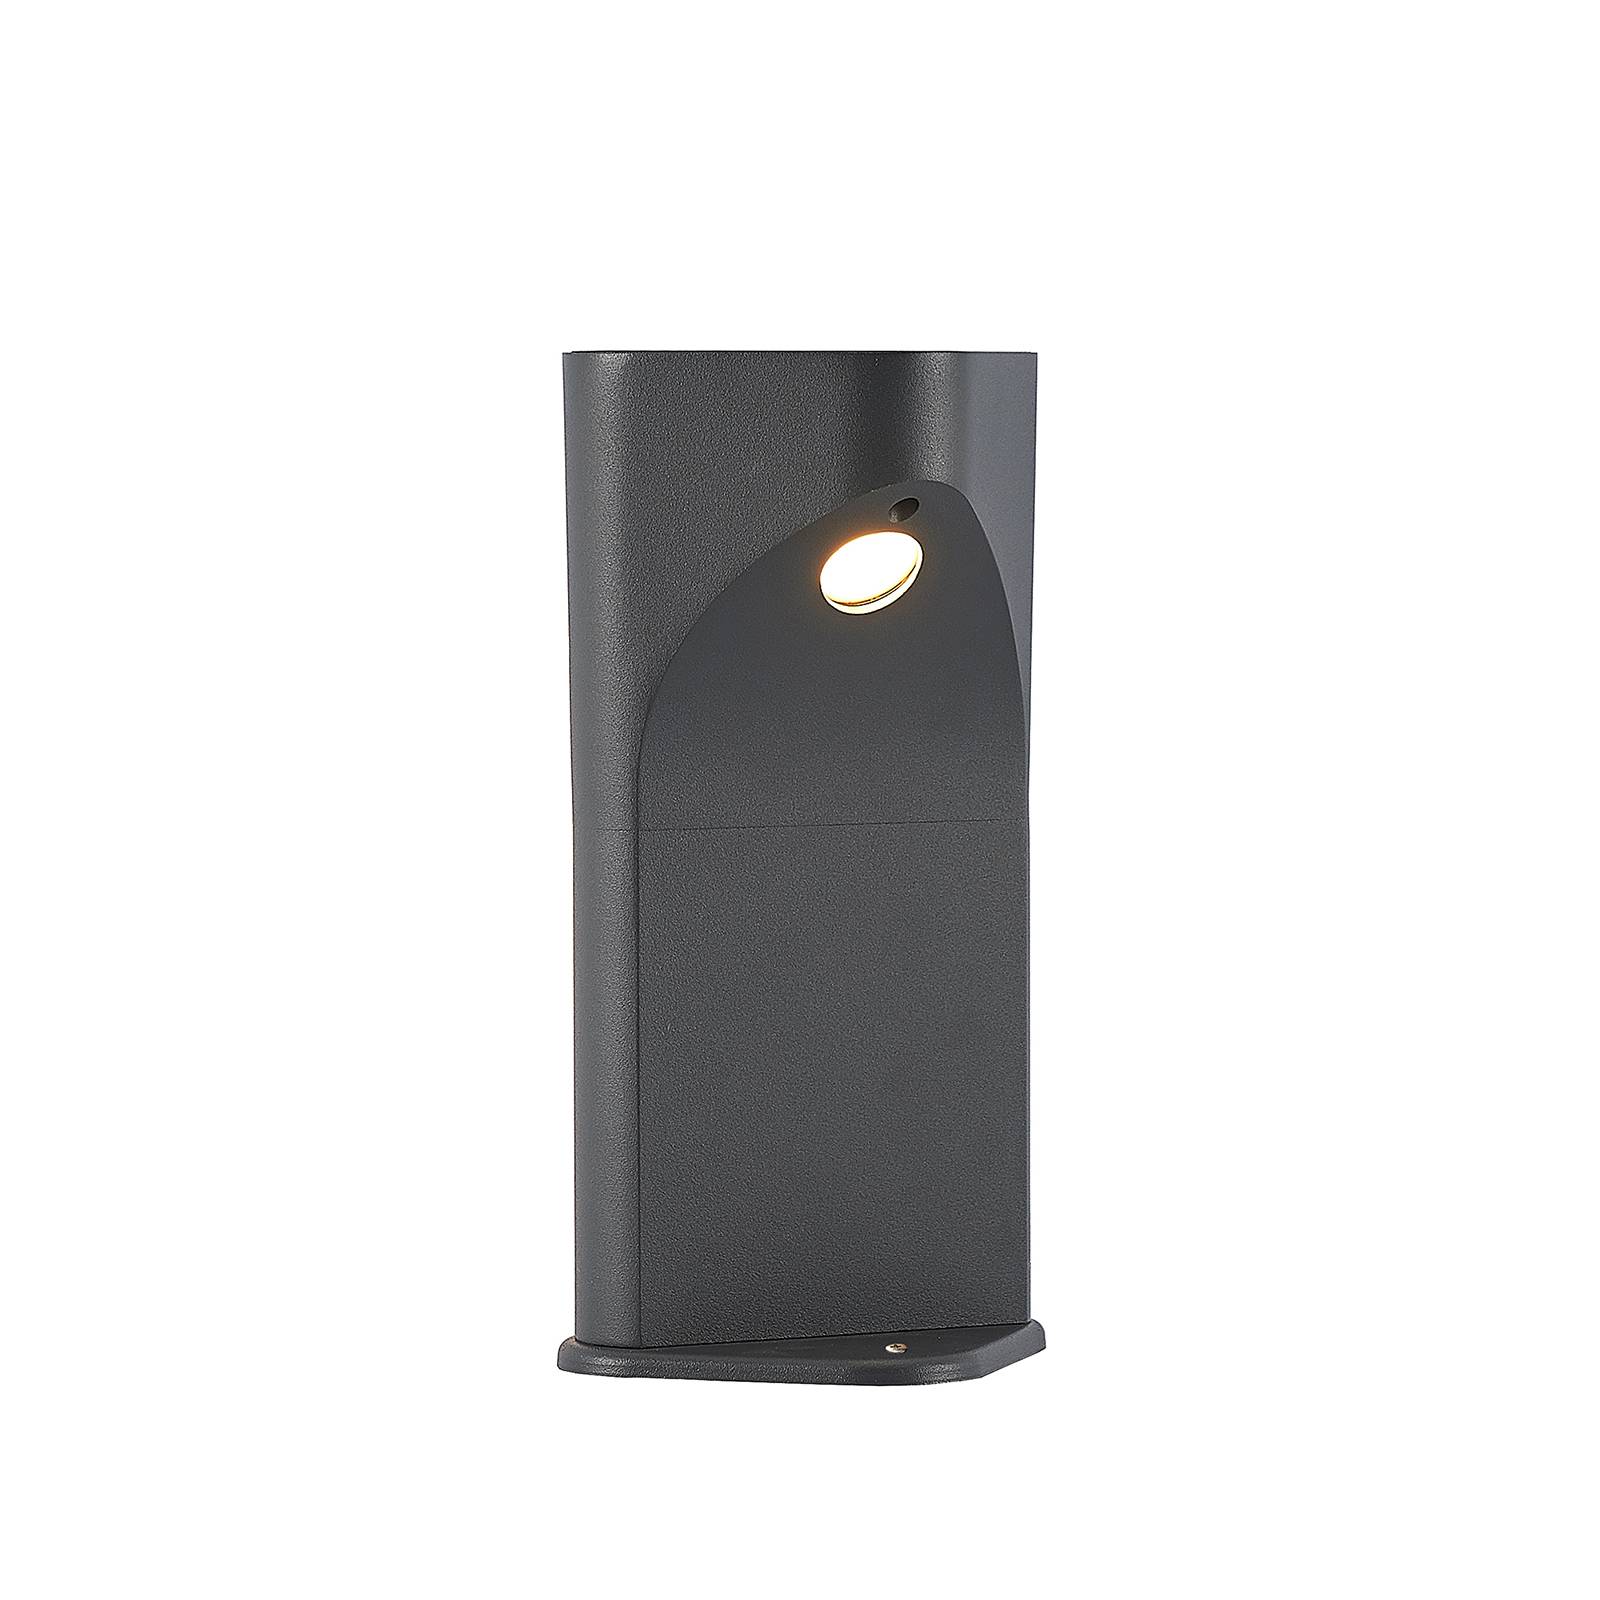 Lucande Valdeta LED pillar light, height 30 cm